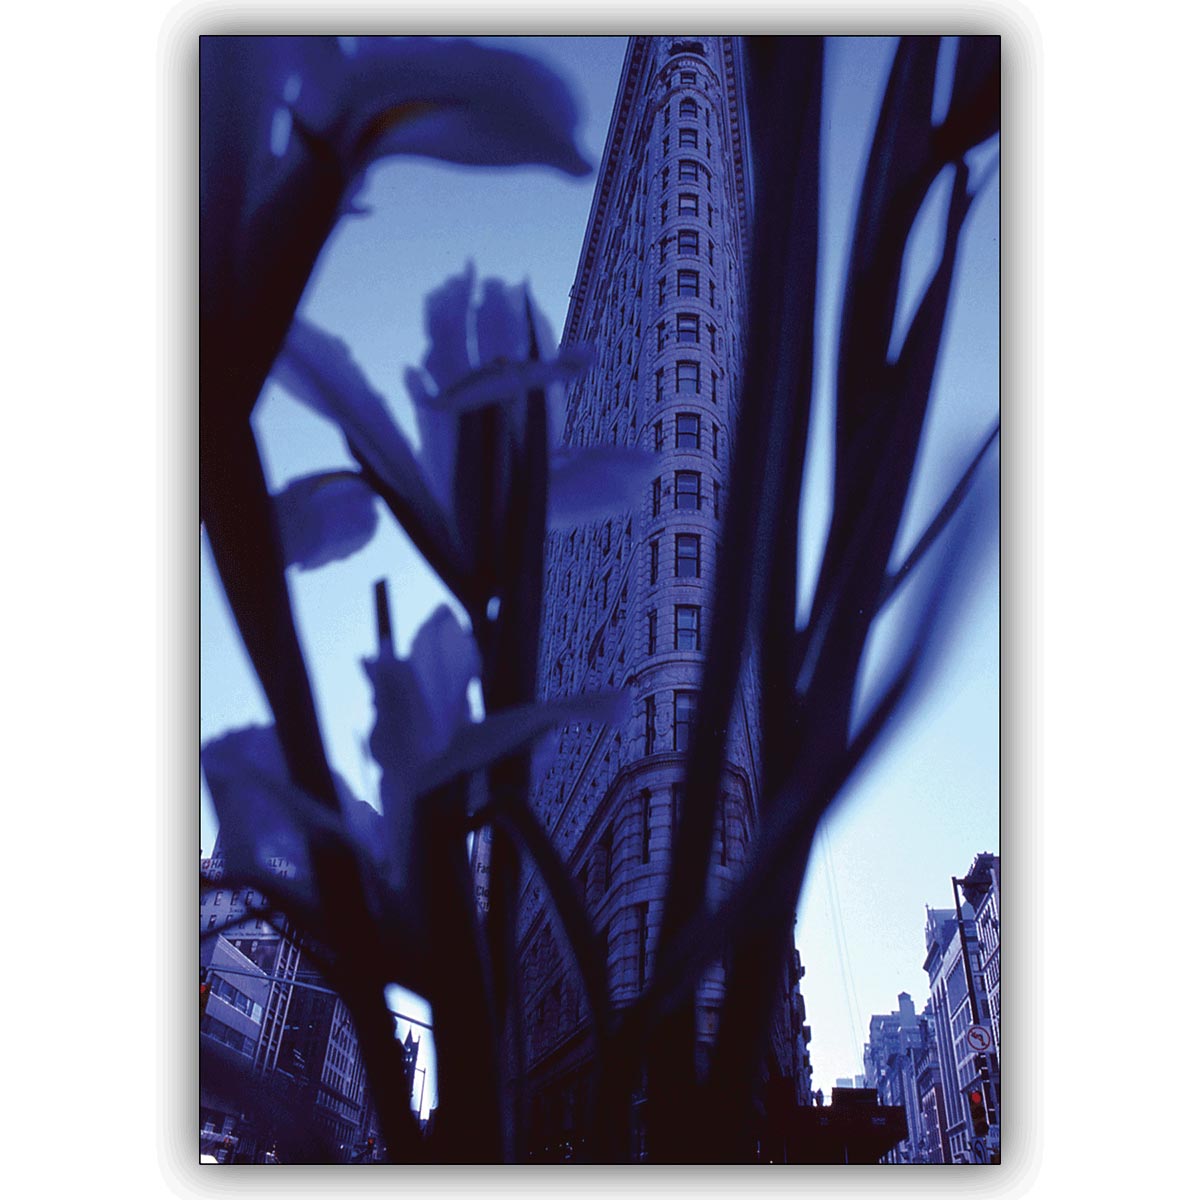 Tolle Foto Blumen Grußkarte: Das Flatiron Building, New York, durch Lilien gesehen.